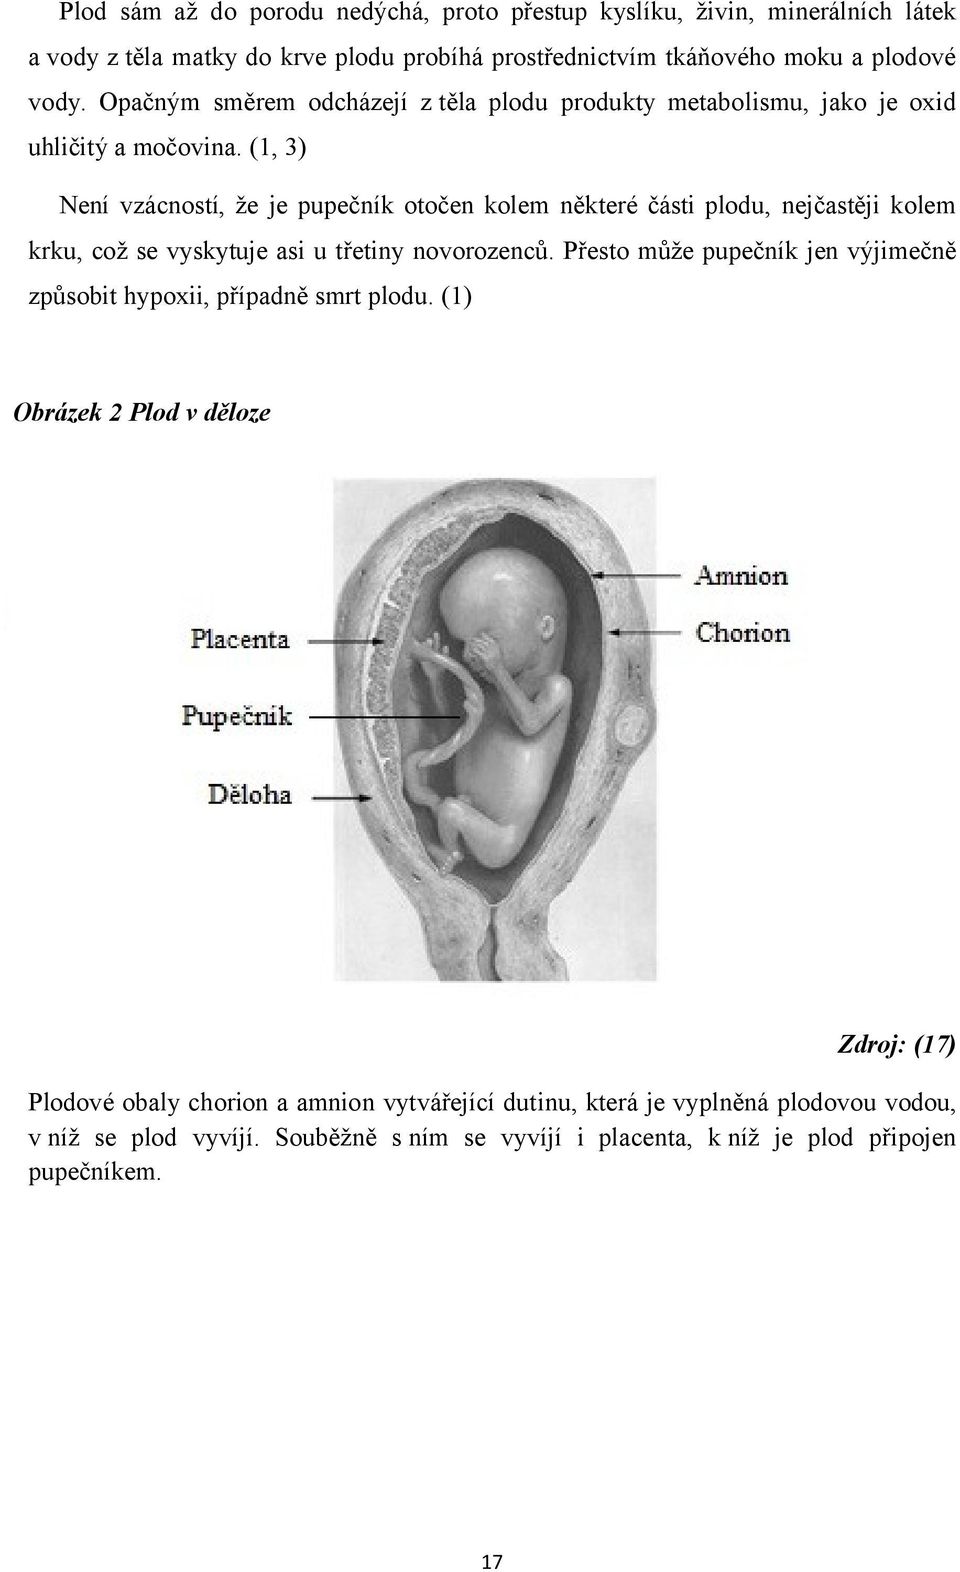 (1, 3) Není vzácností, že je pupečník otočen kolem některé části plodu, nejčastěji kolem krku, což se vyskytuje asi u třetiny novorozenců.